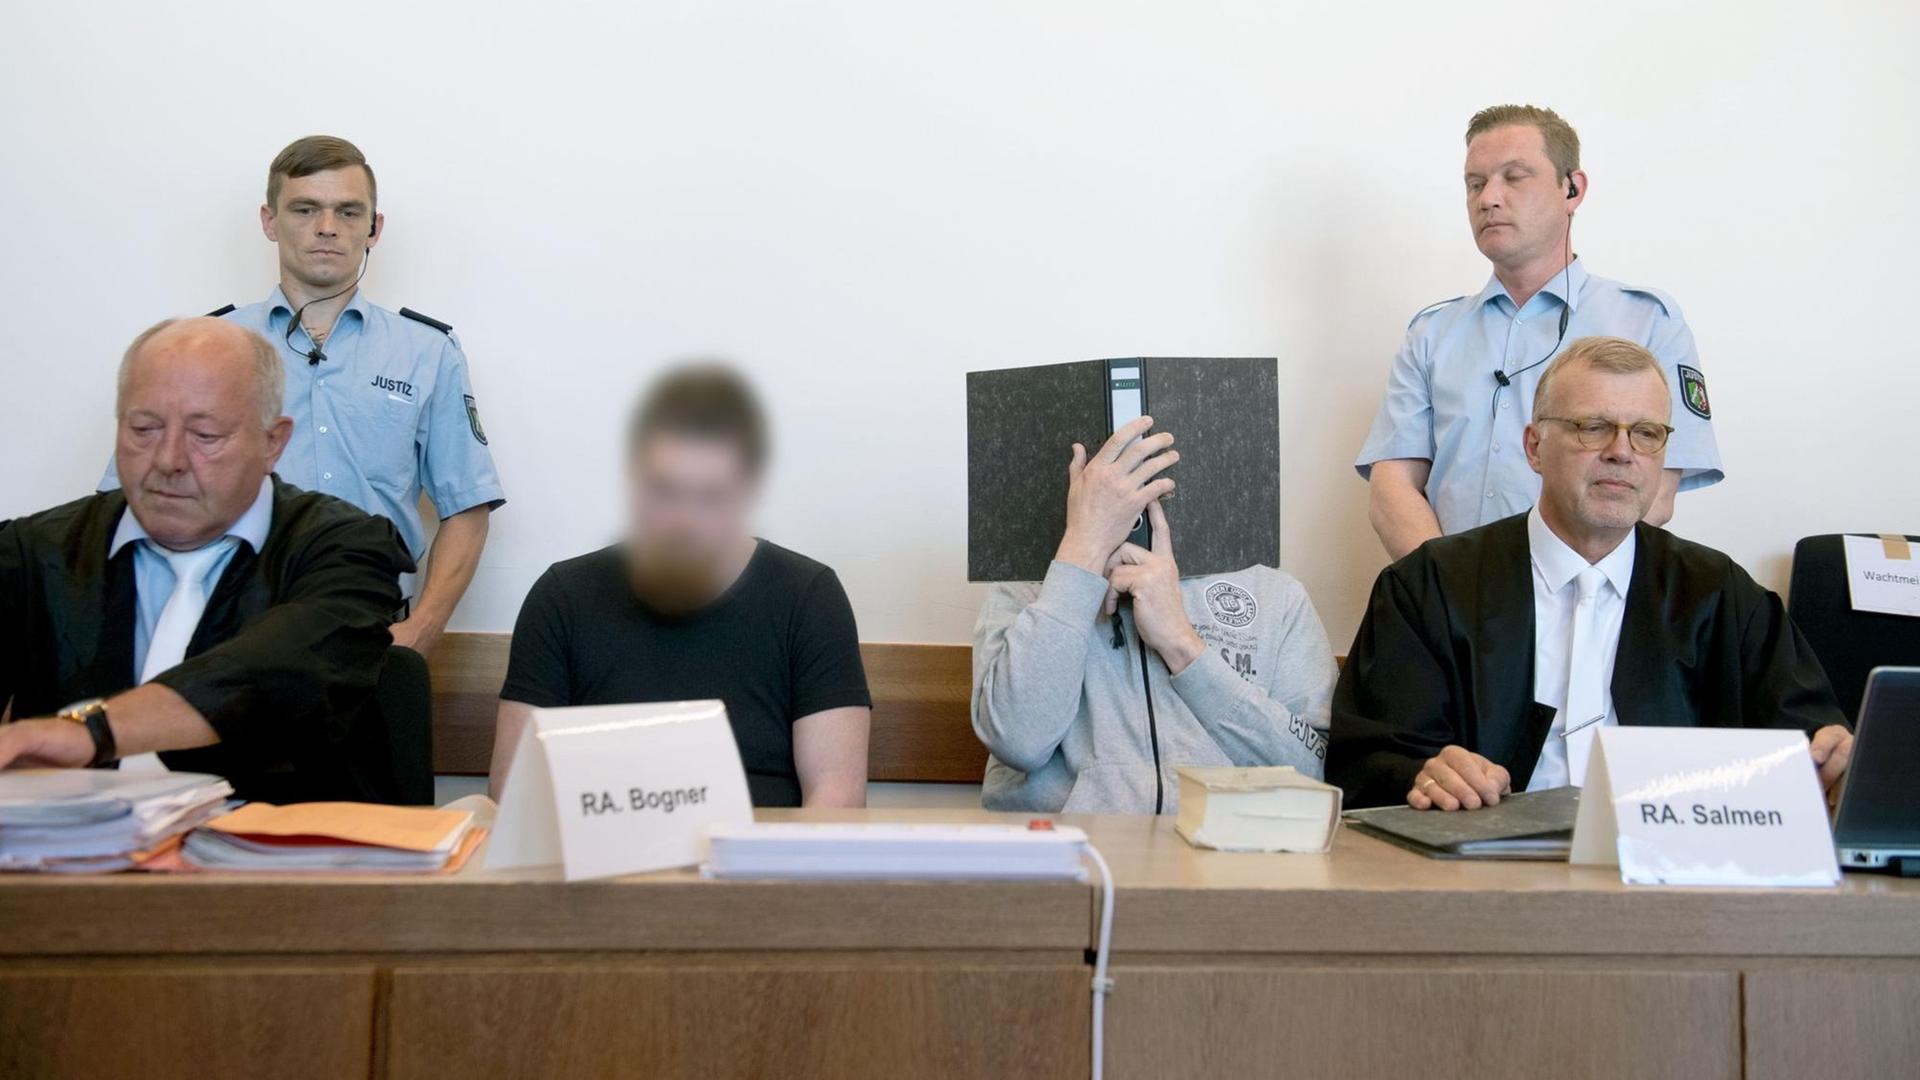 Landgericht Detmold: Die Angeklagten Mario S. (l) und Andreas V. sitzen zwischen ihren Anwälten Jürgen Bogner (l) und Johannes Salmen im Saal des Landgerichtes. Ihre Gesichter sind unkenntlich gemacht.